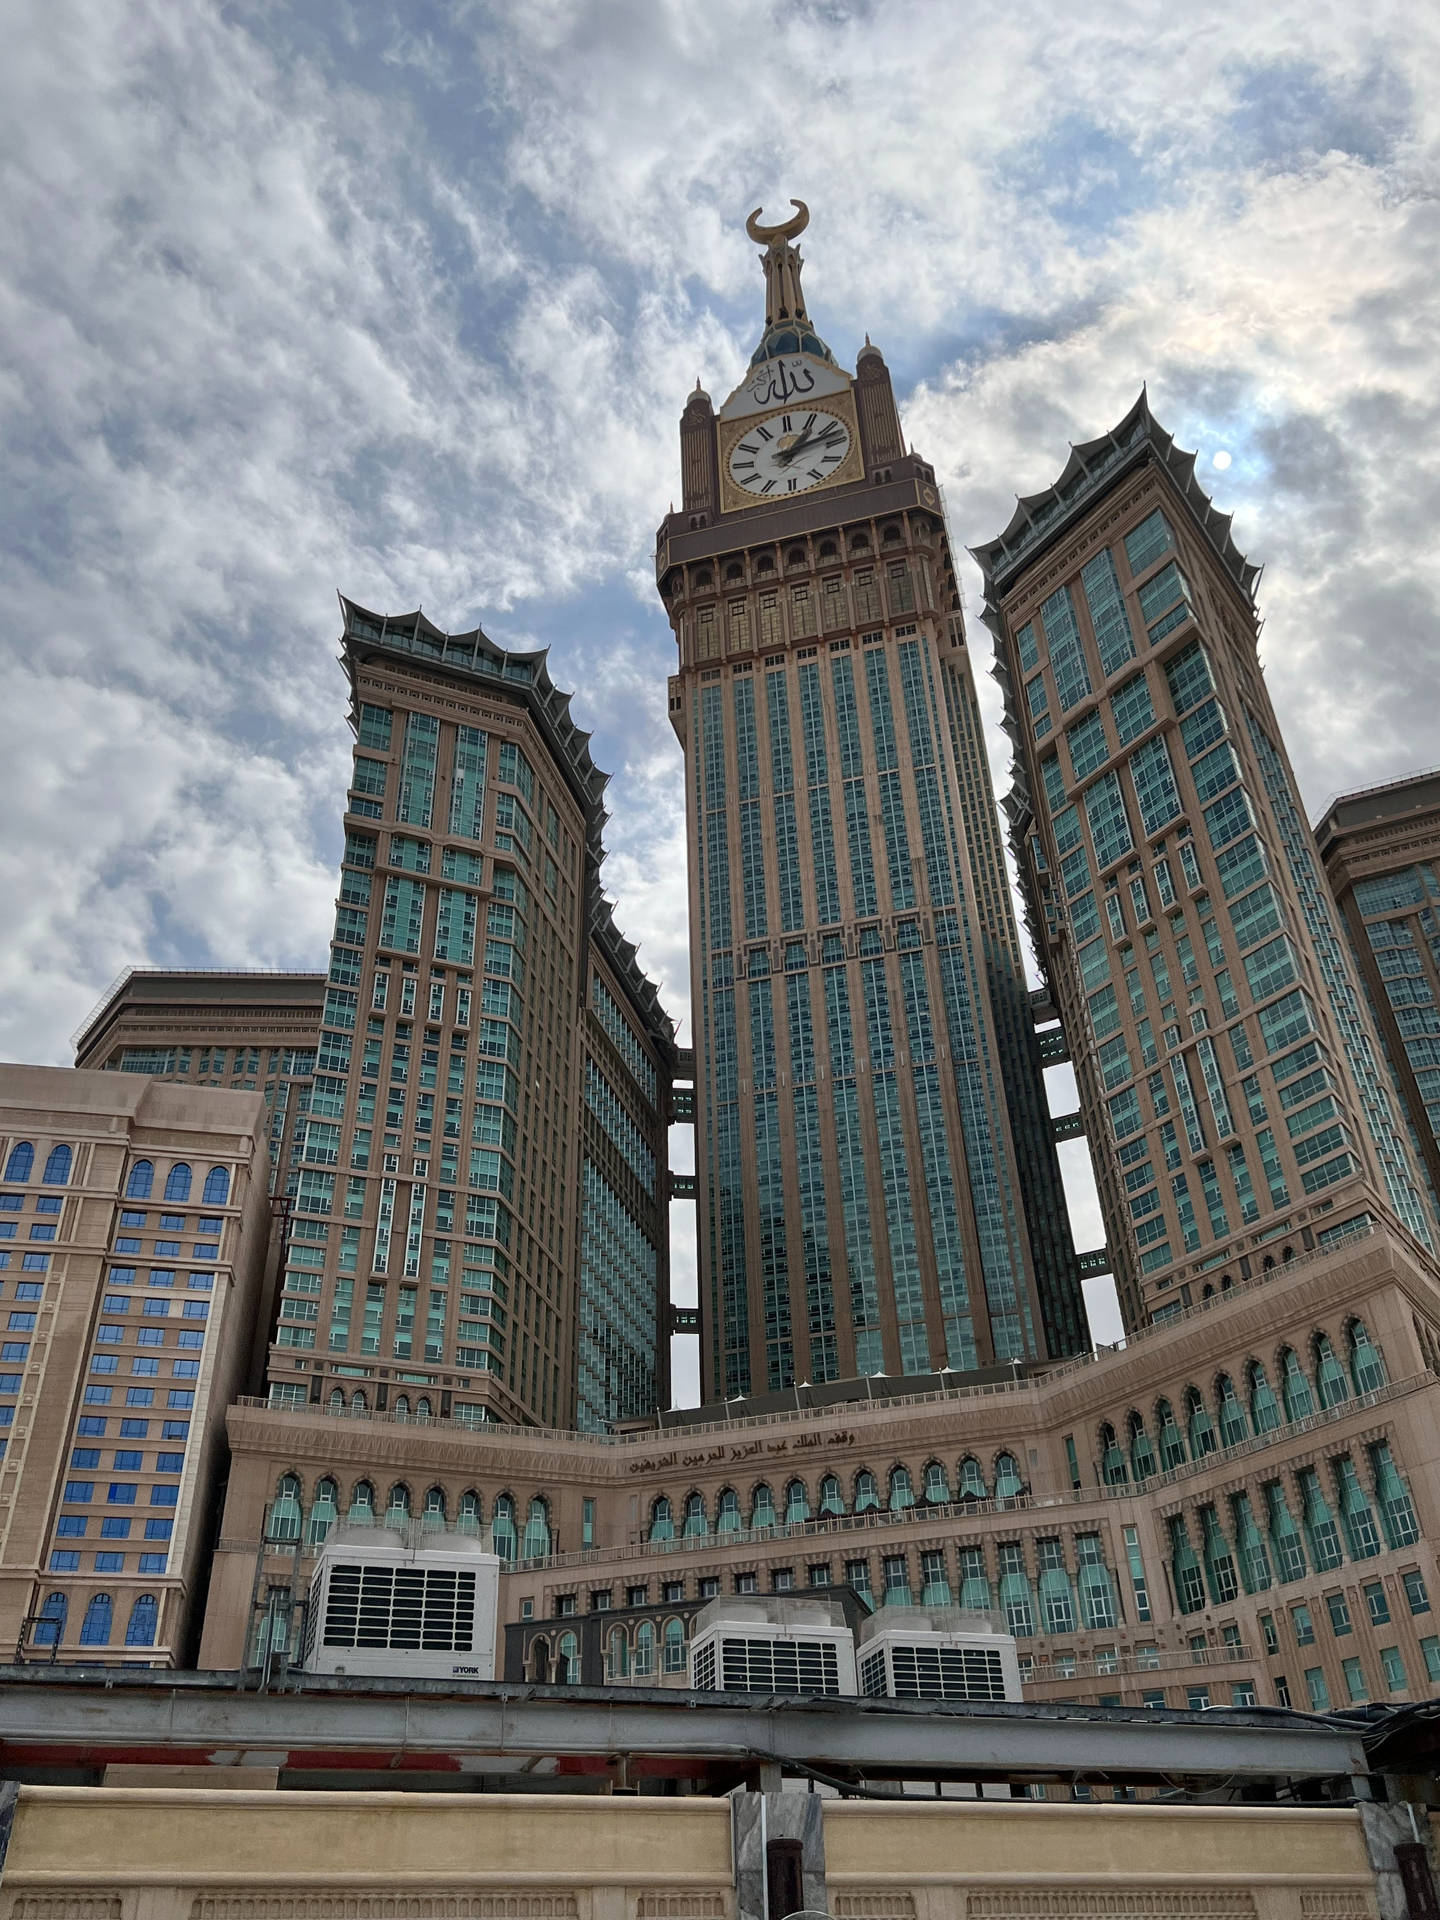 Towering Clock Tower Makkah Hd 4k Picture